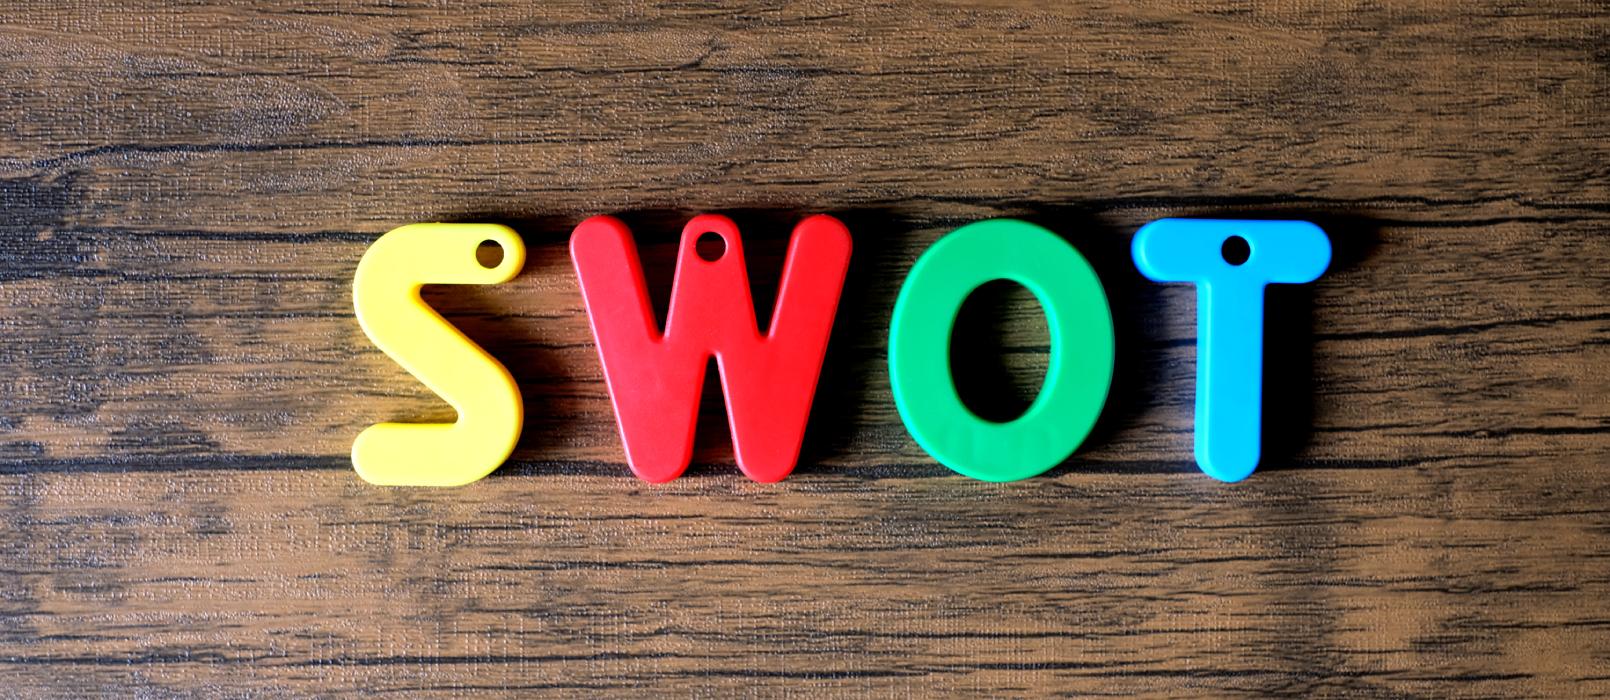 SWOT-Analyse - Was ist das und wie wird sie im Unternehmen angewendet?